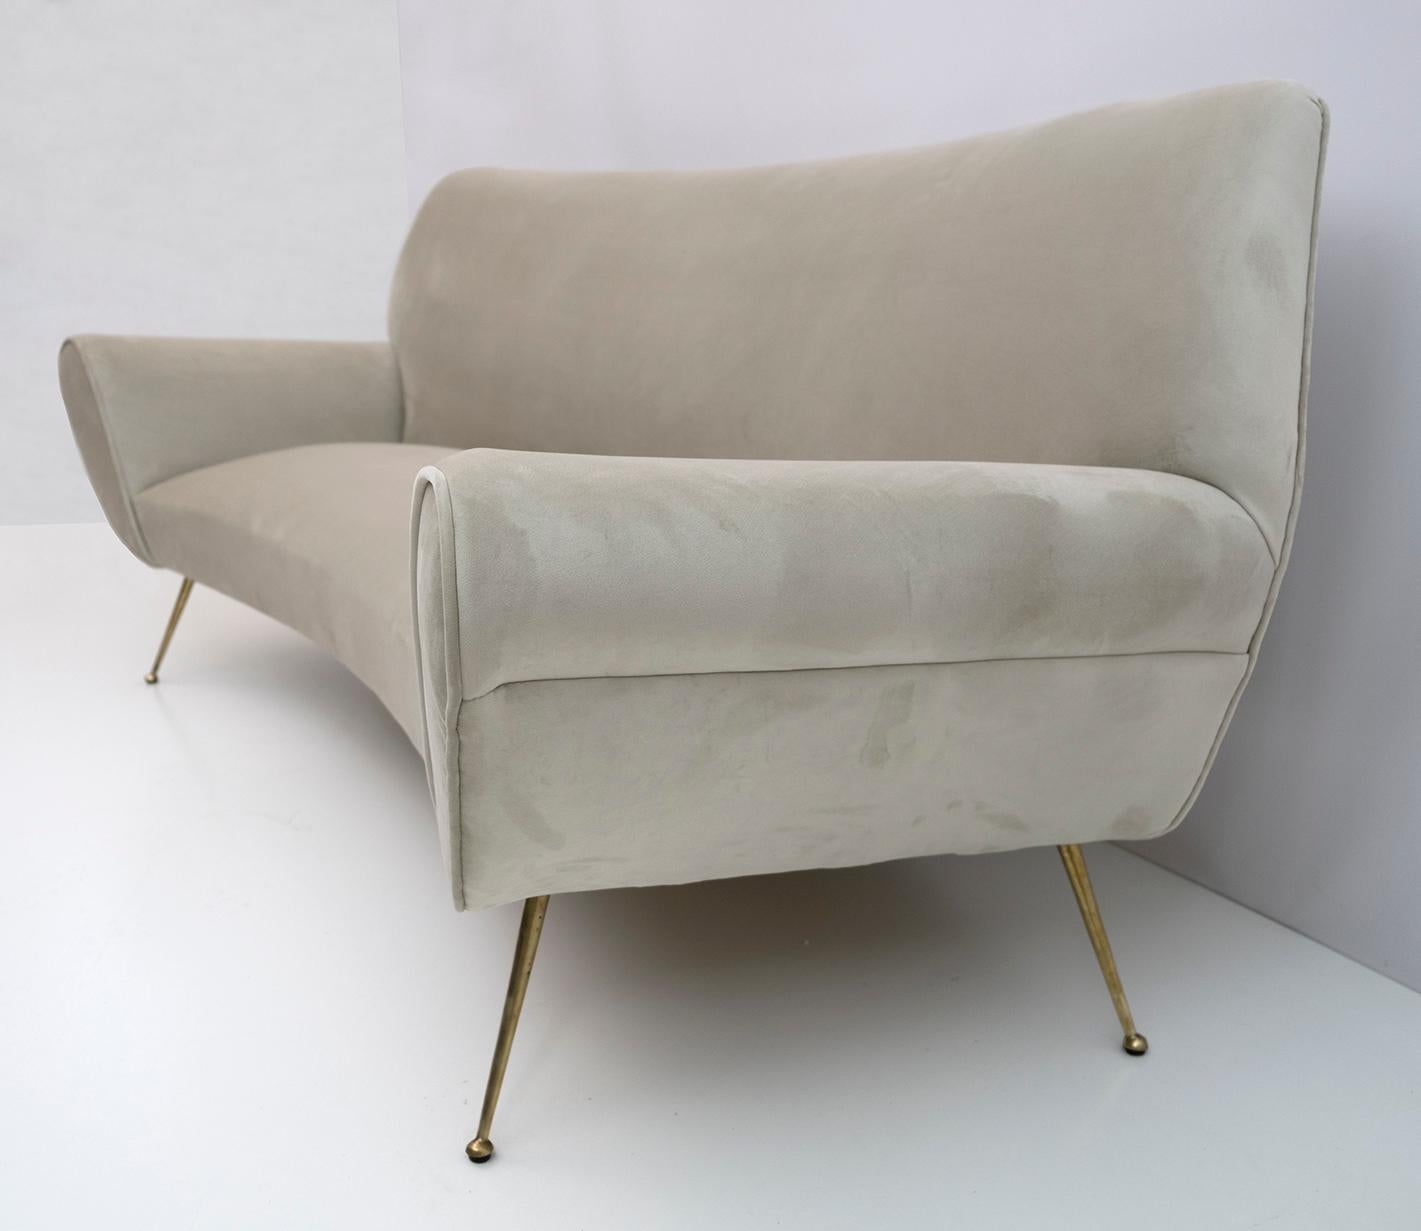 Gigi Radice Mid-Century Modern Italian Velvet Curved Sofa for Minotti, 1950s For Sale 2